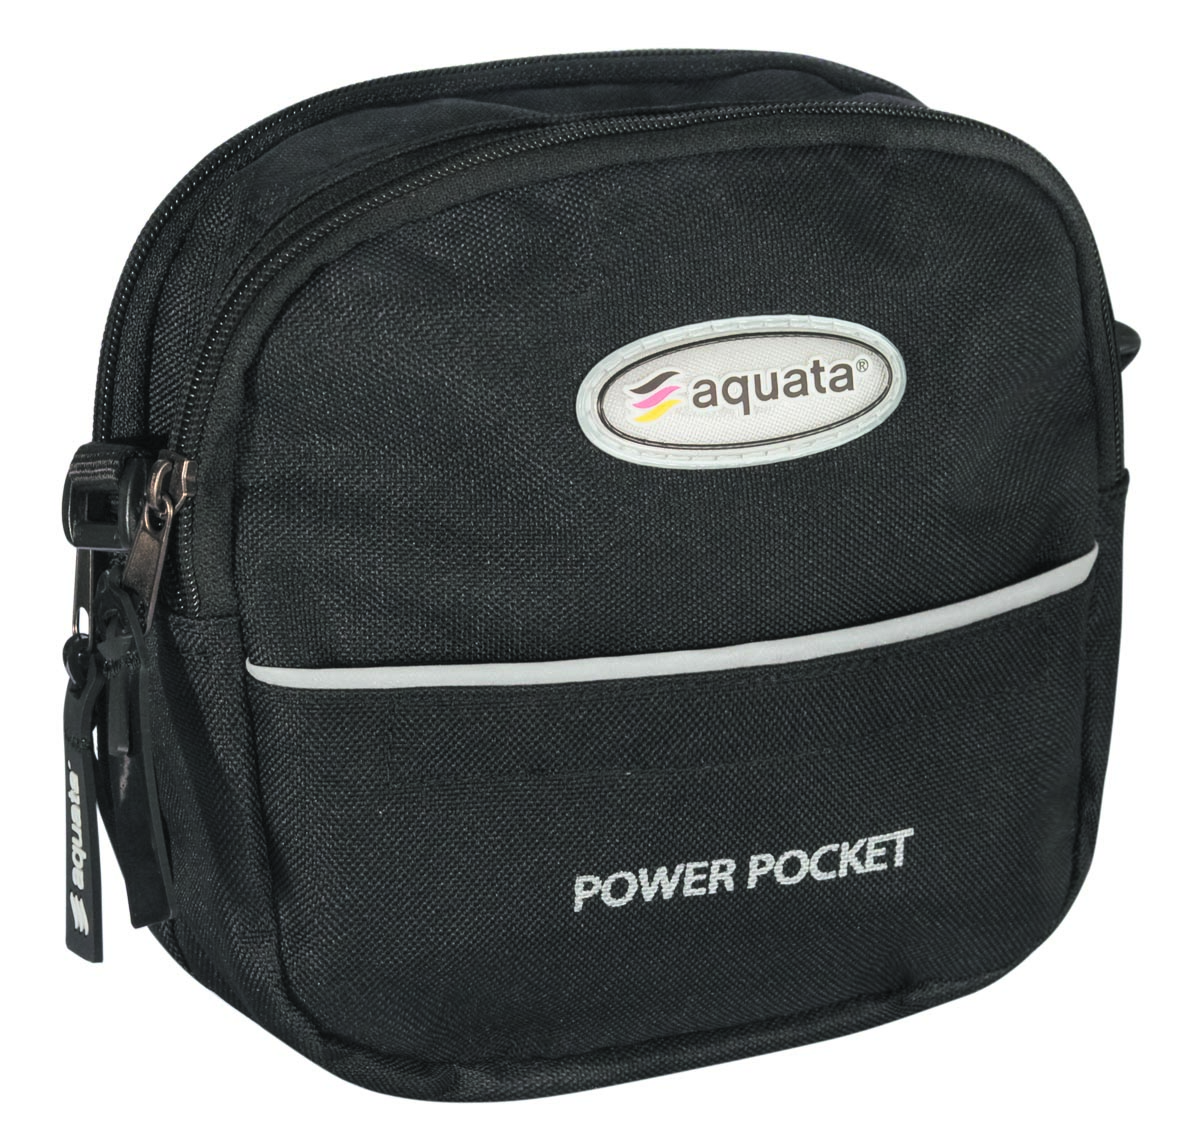 aquata  Pocket  System Tasche für Tauchanzug   passend für alle Tauchanzüge Modell:  Power Pocket | aquata